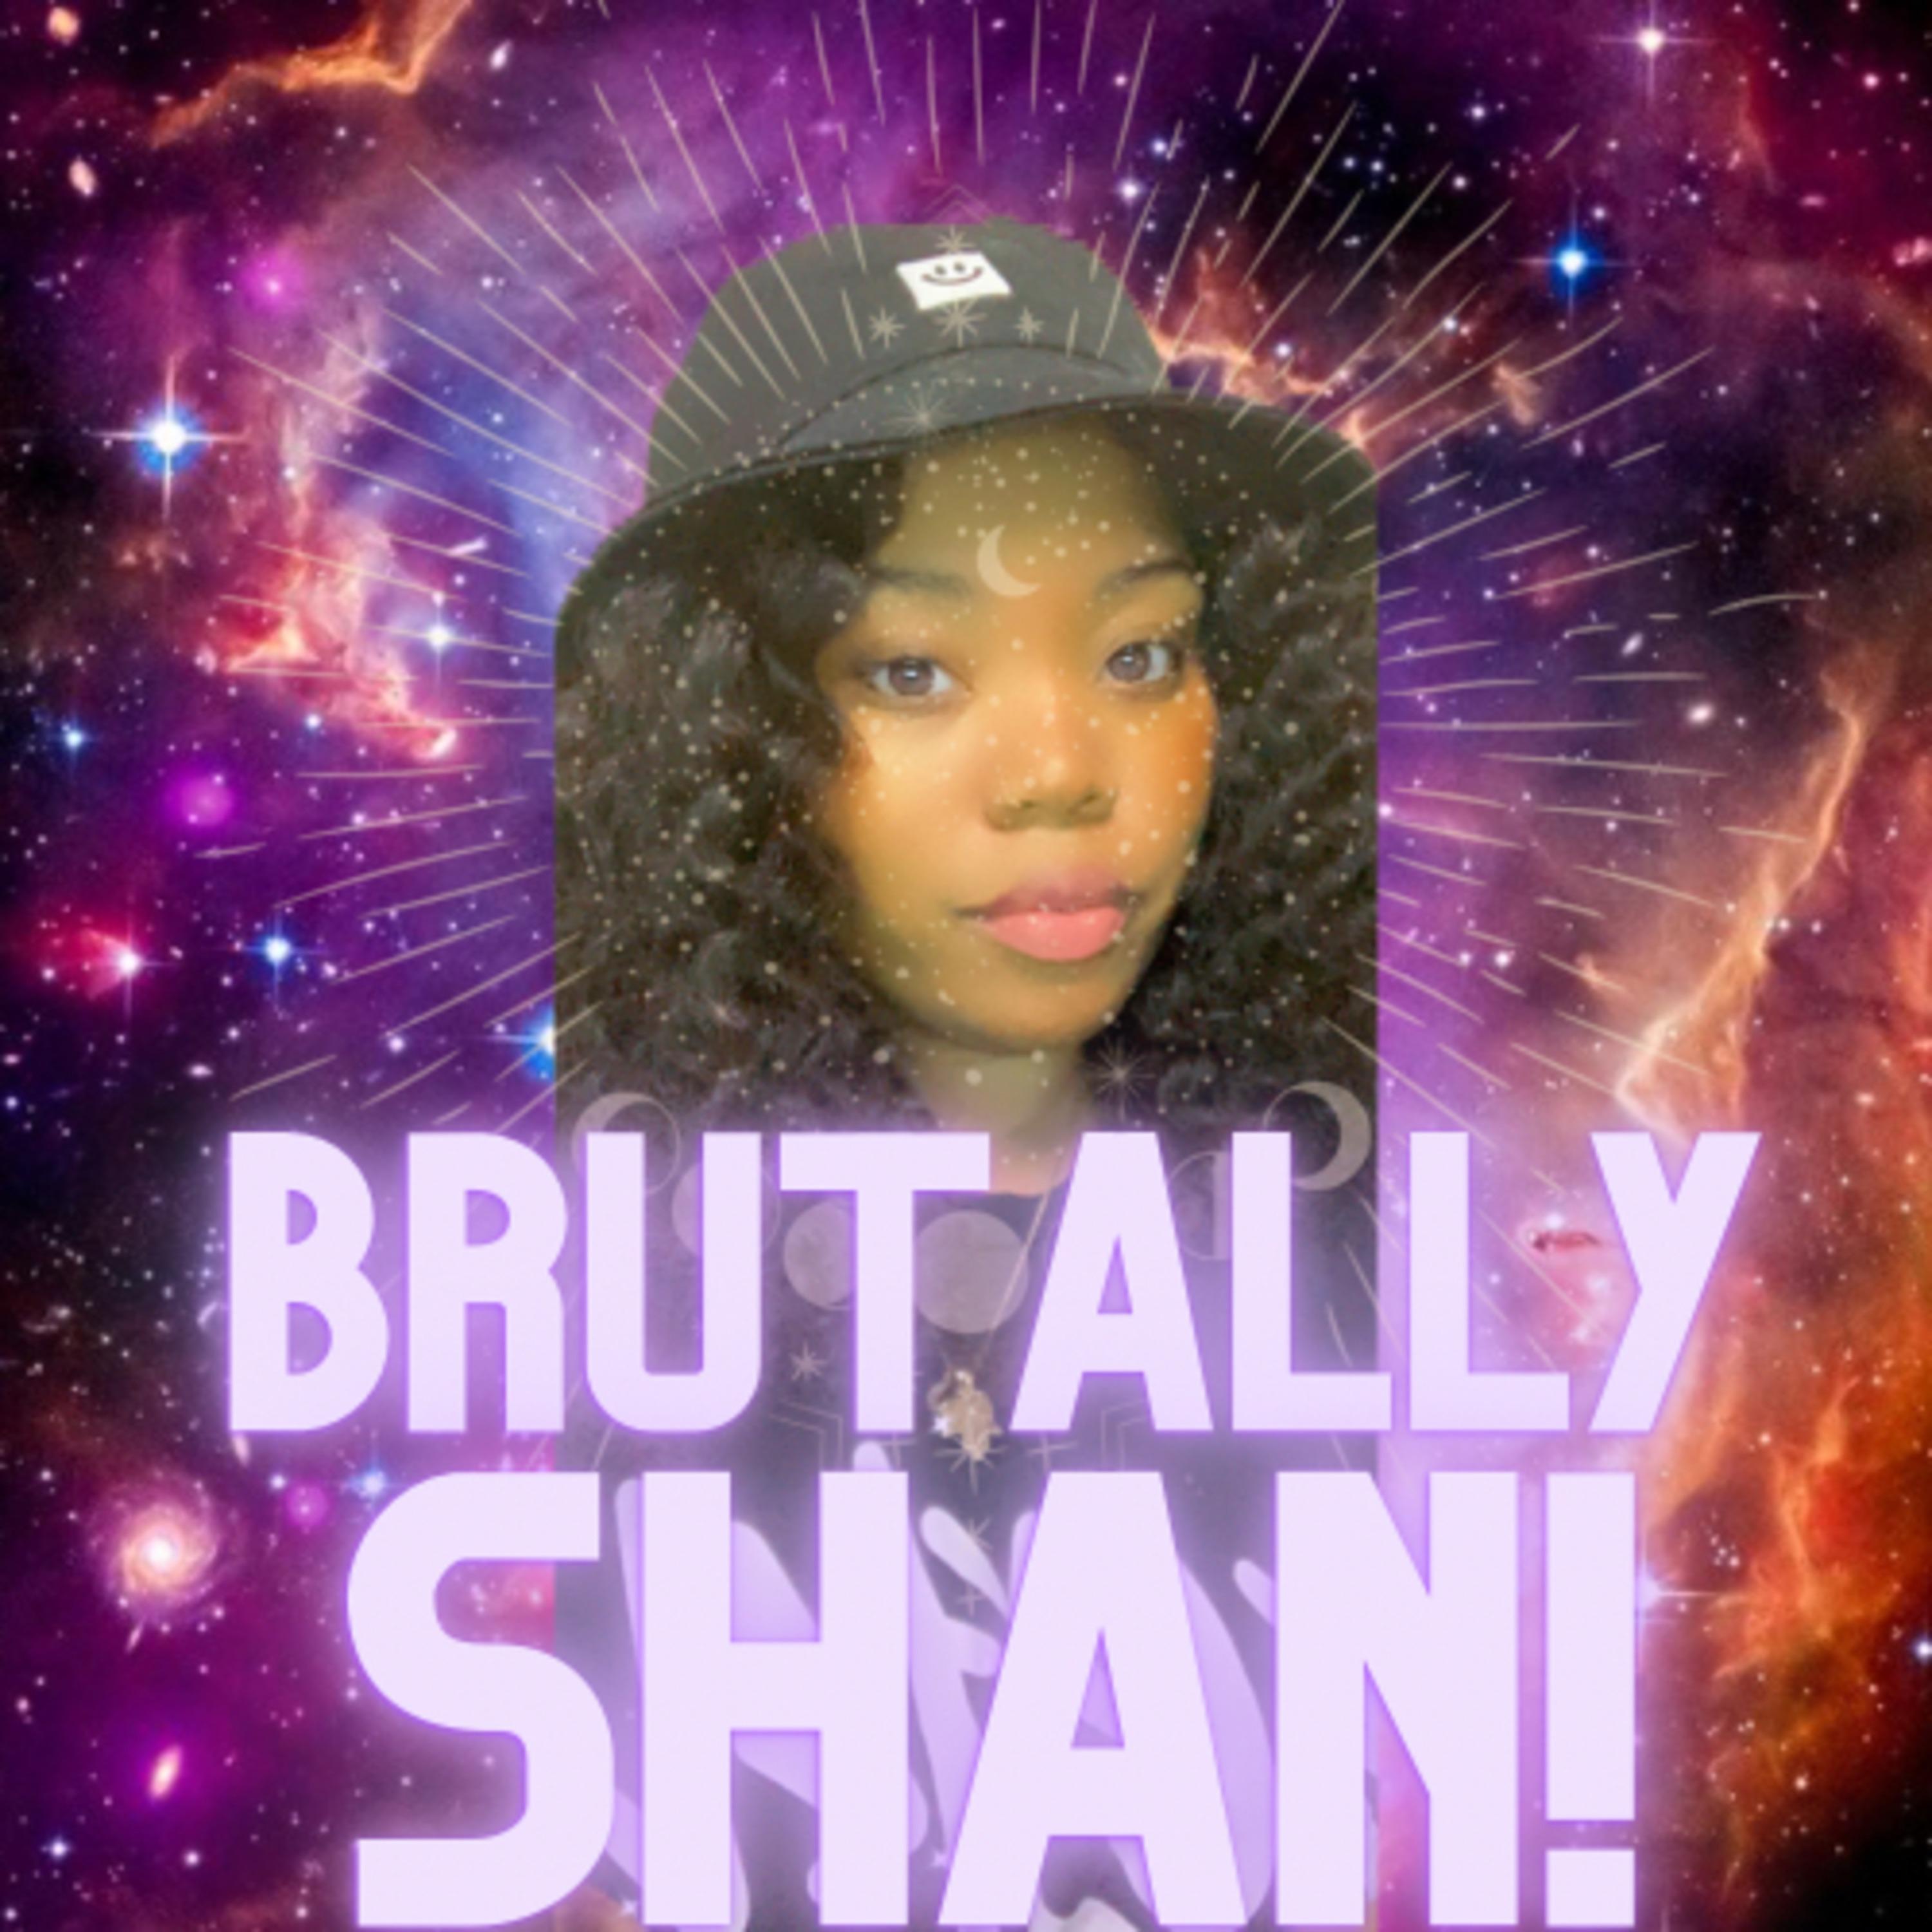 Brutally Shan